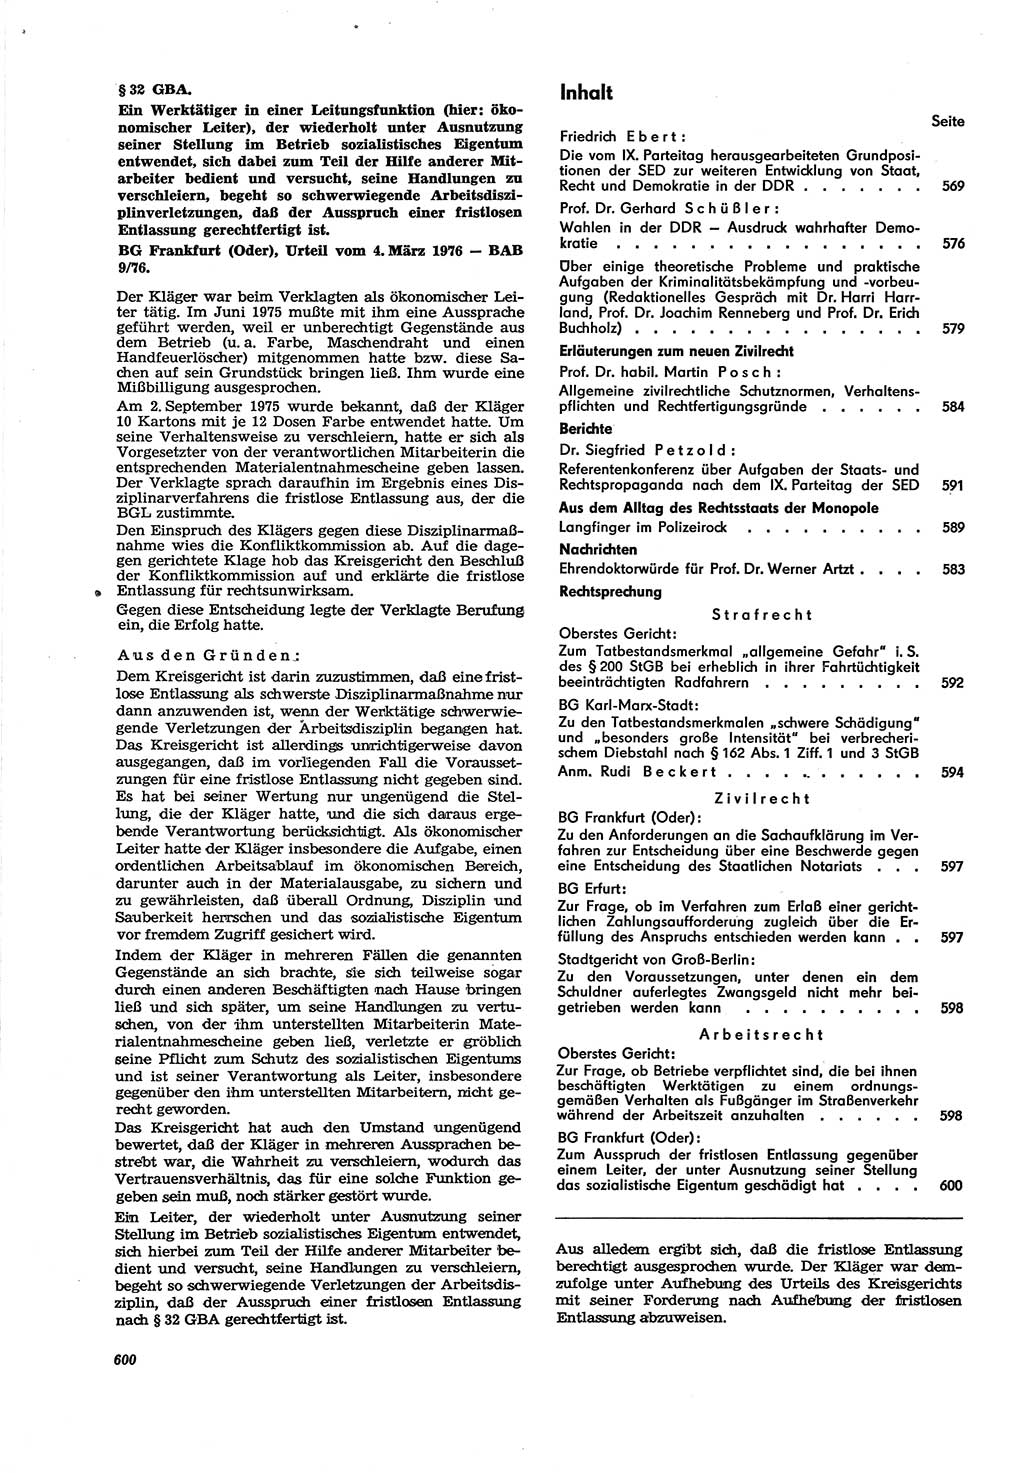 Neue Justiz (NJ), Zeitschrift für Recht und Rechtswissenschaft [Deutsche Demokratische Republik (DDR)], 30. Jahrgang 1976, Seite 600 (NJ DDR 1976, S. 600)